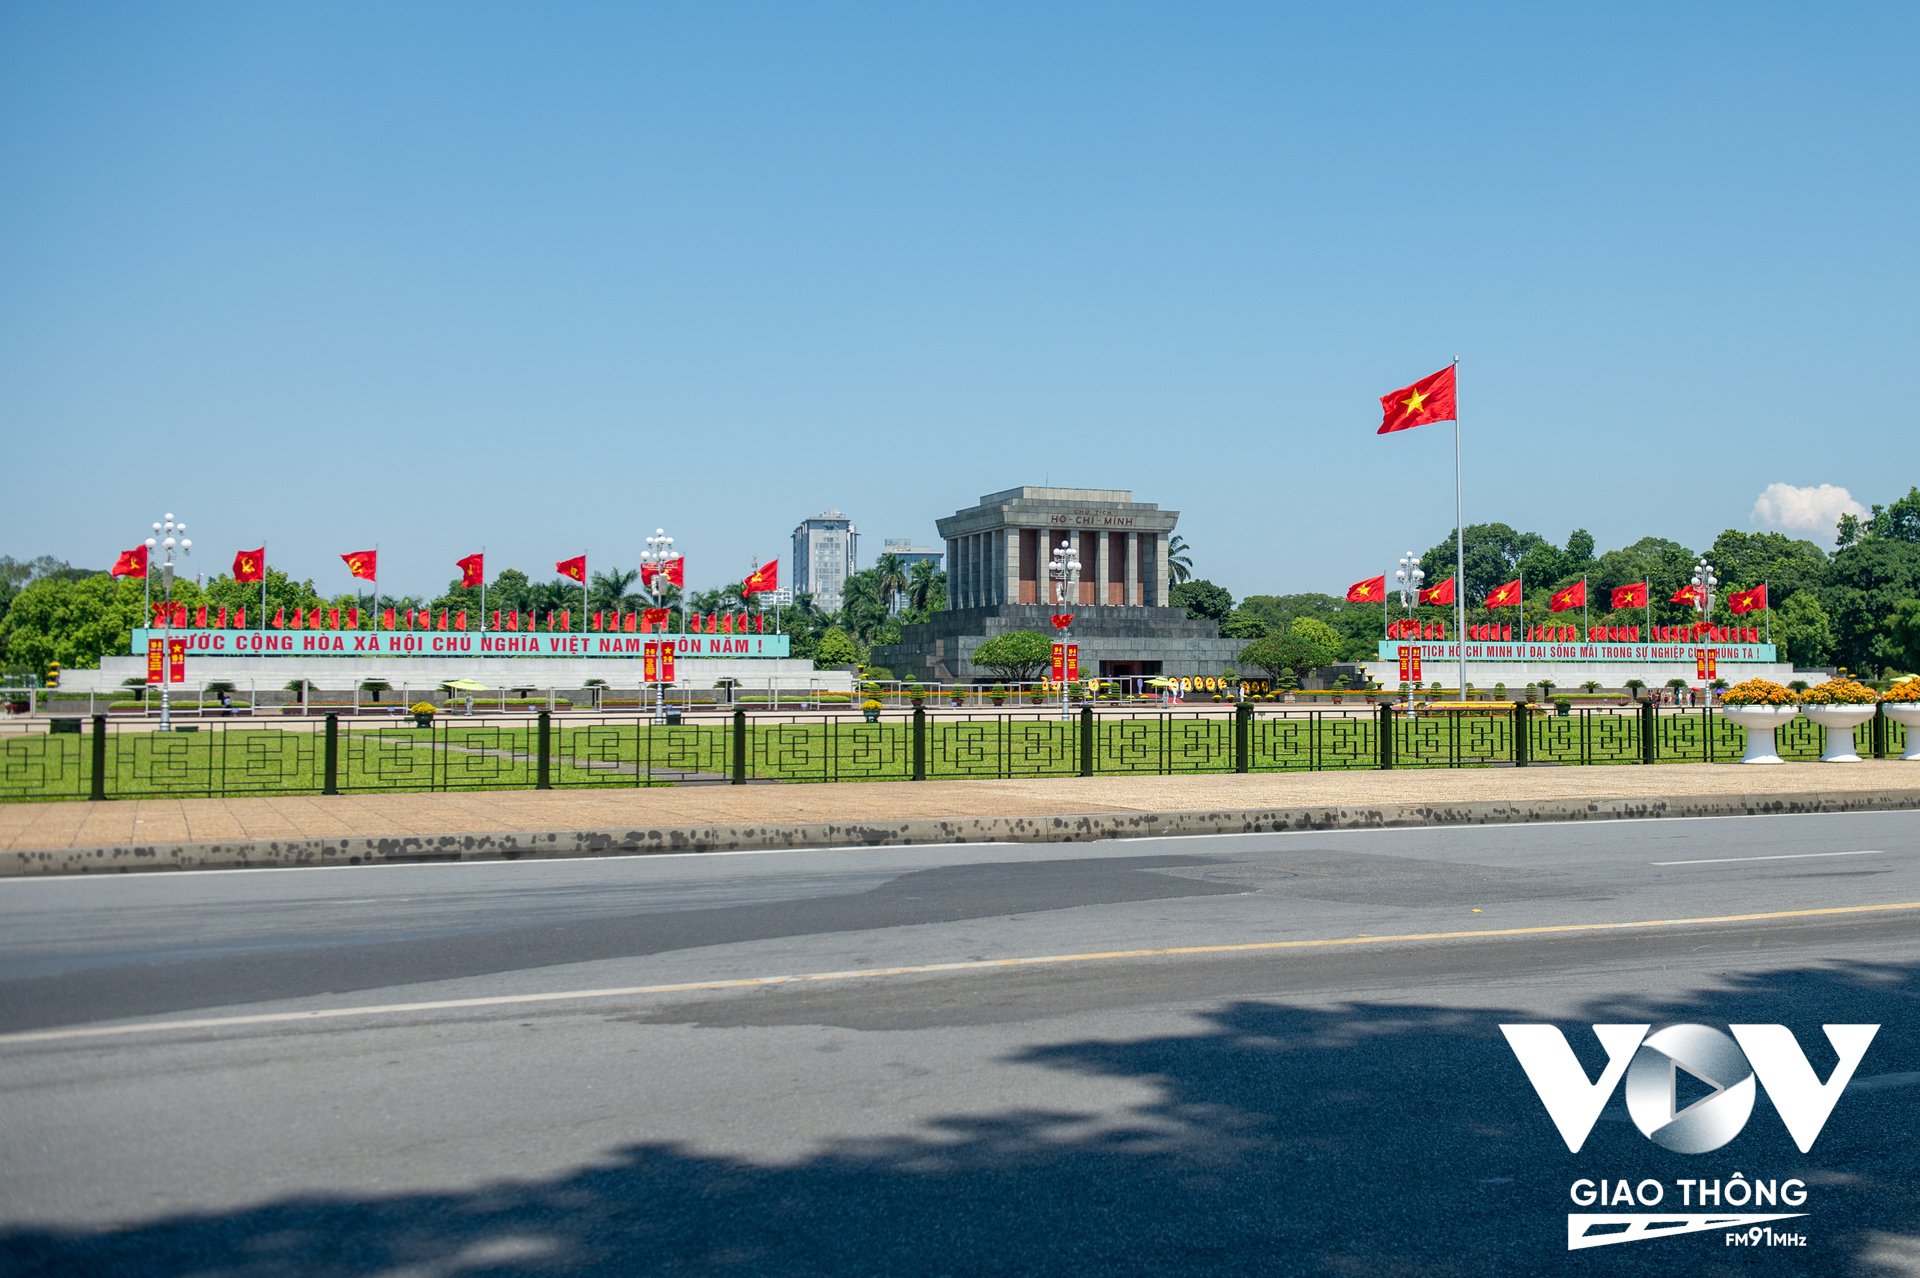 Khu vực Lăng Chủ tịch Hồ Chí Minh, Quảng trường Ba Đình rực rỡ cờ hoa. Tại đây, 78 năm trước, Chủ tịch Hồ Chí Minh đã đọc Tuyên ngôn Độc lập.